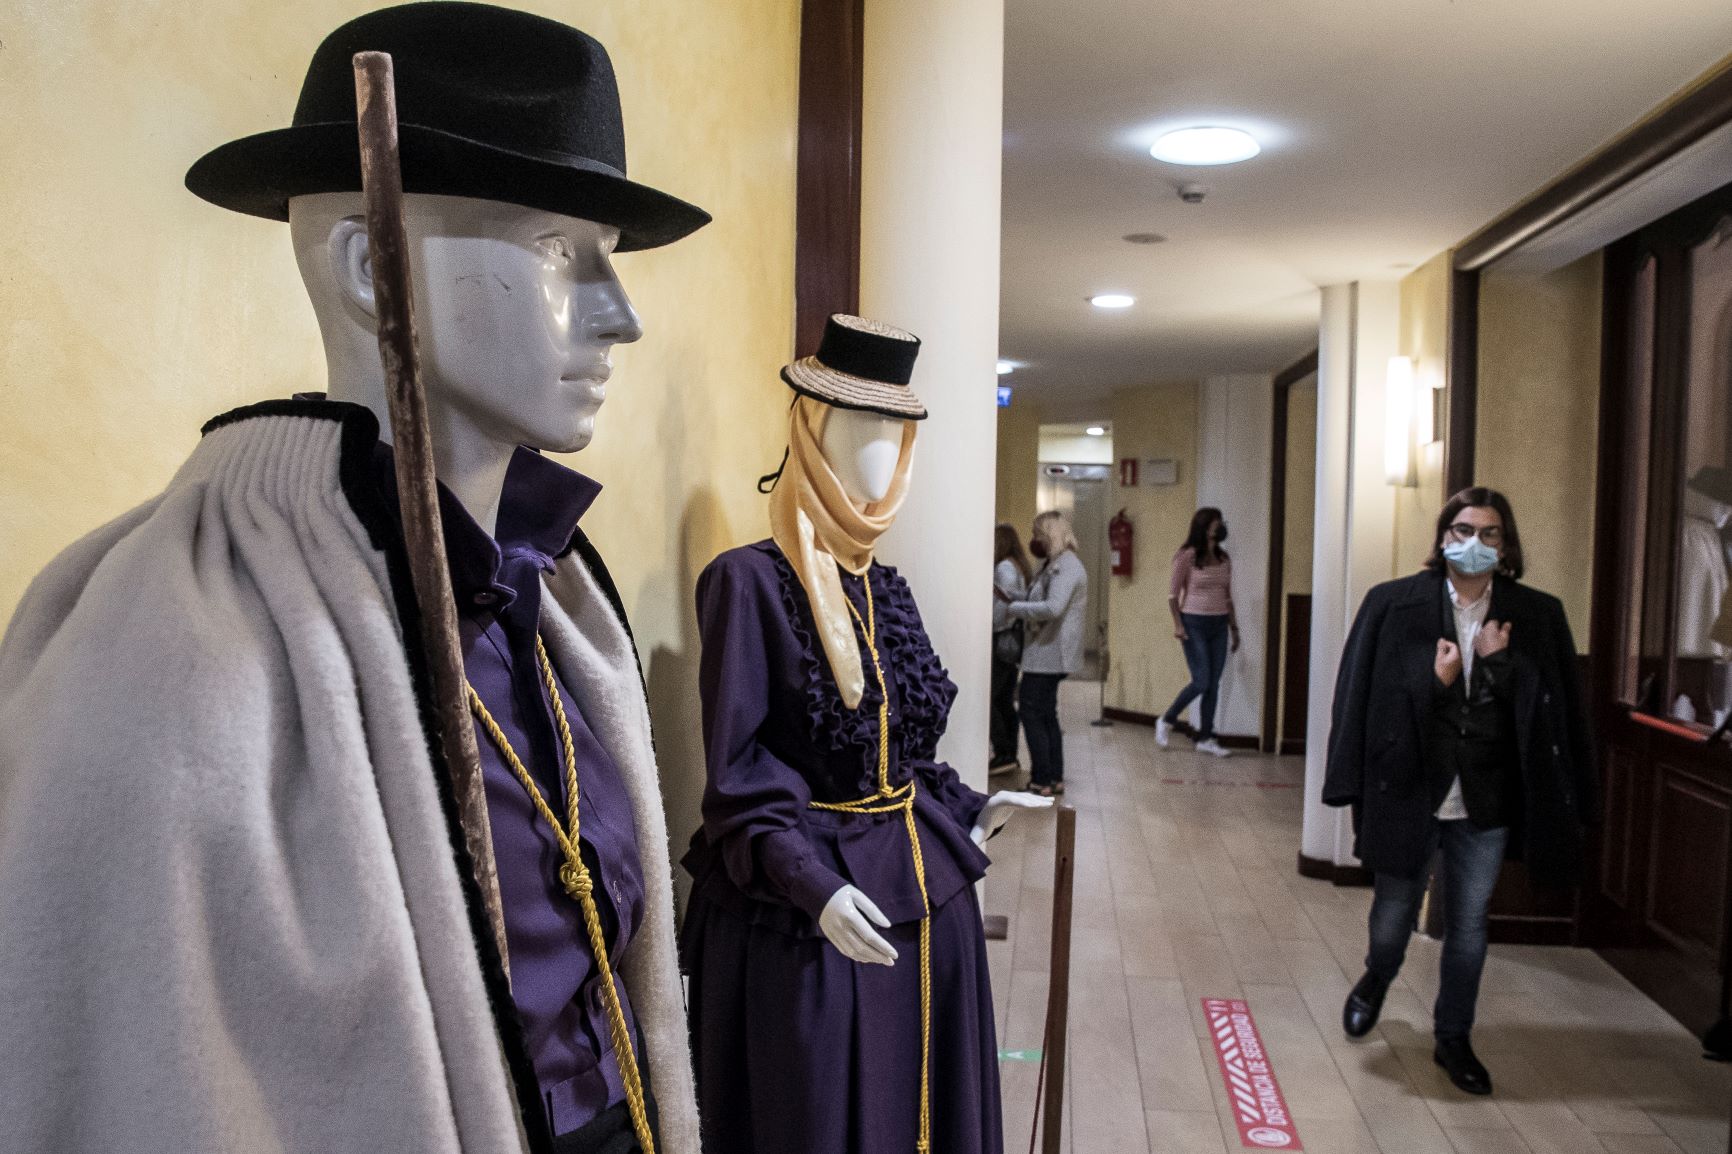 Exposición ‘Los hábitos religiosos en la vestimenta tradicional’ en el Teatro Leal. Tenerife